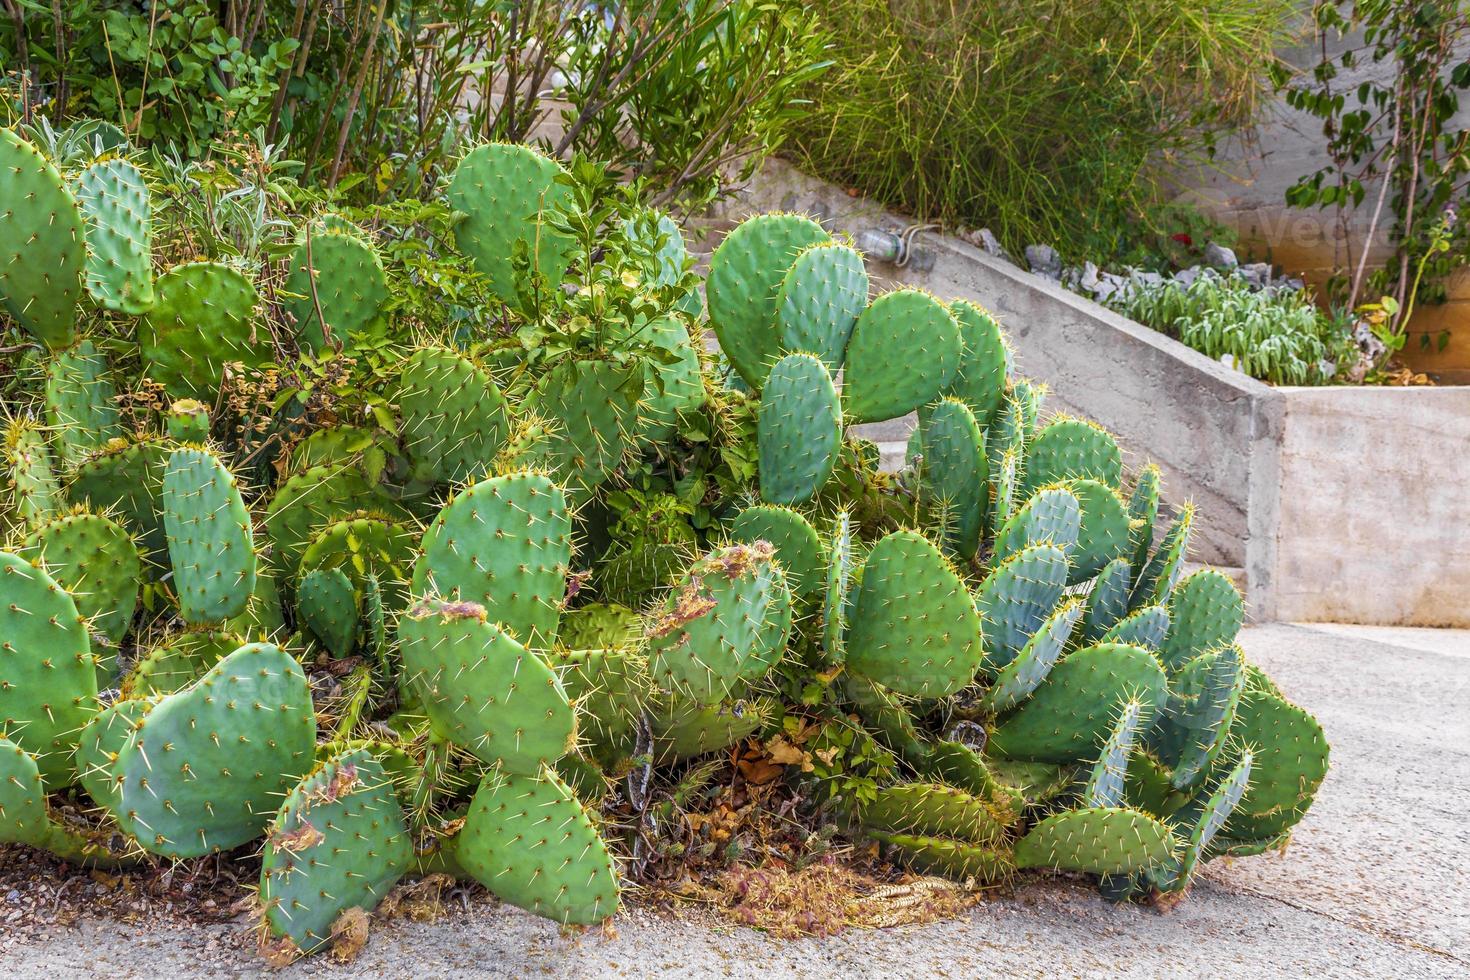 grüne schöne kaktuspflanze mit großen stacheln in kroatien. foto